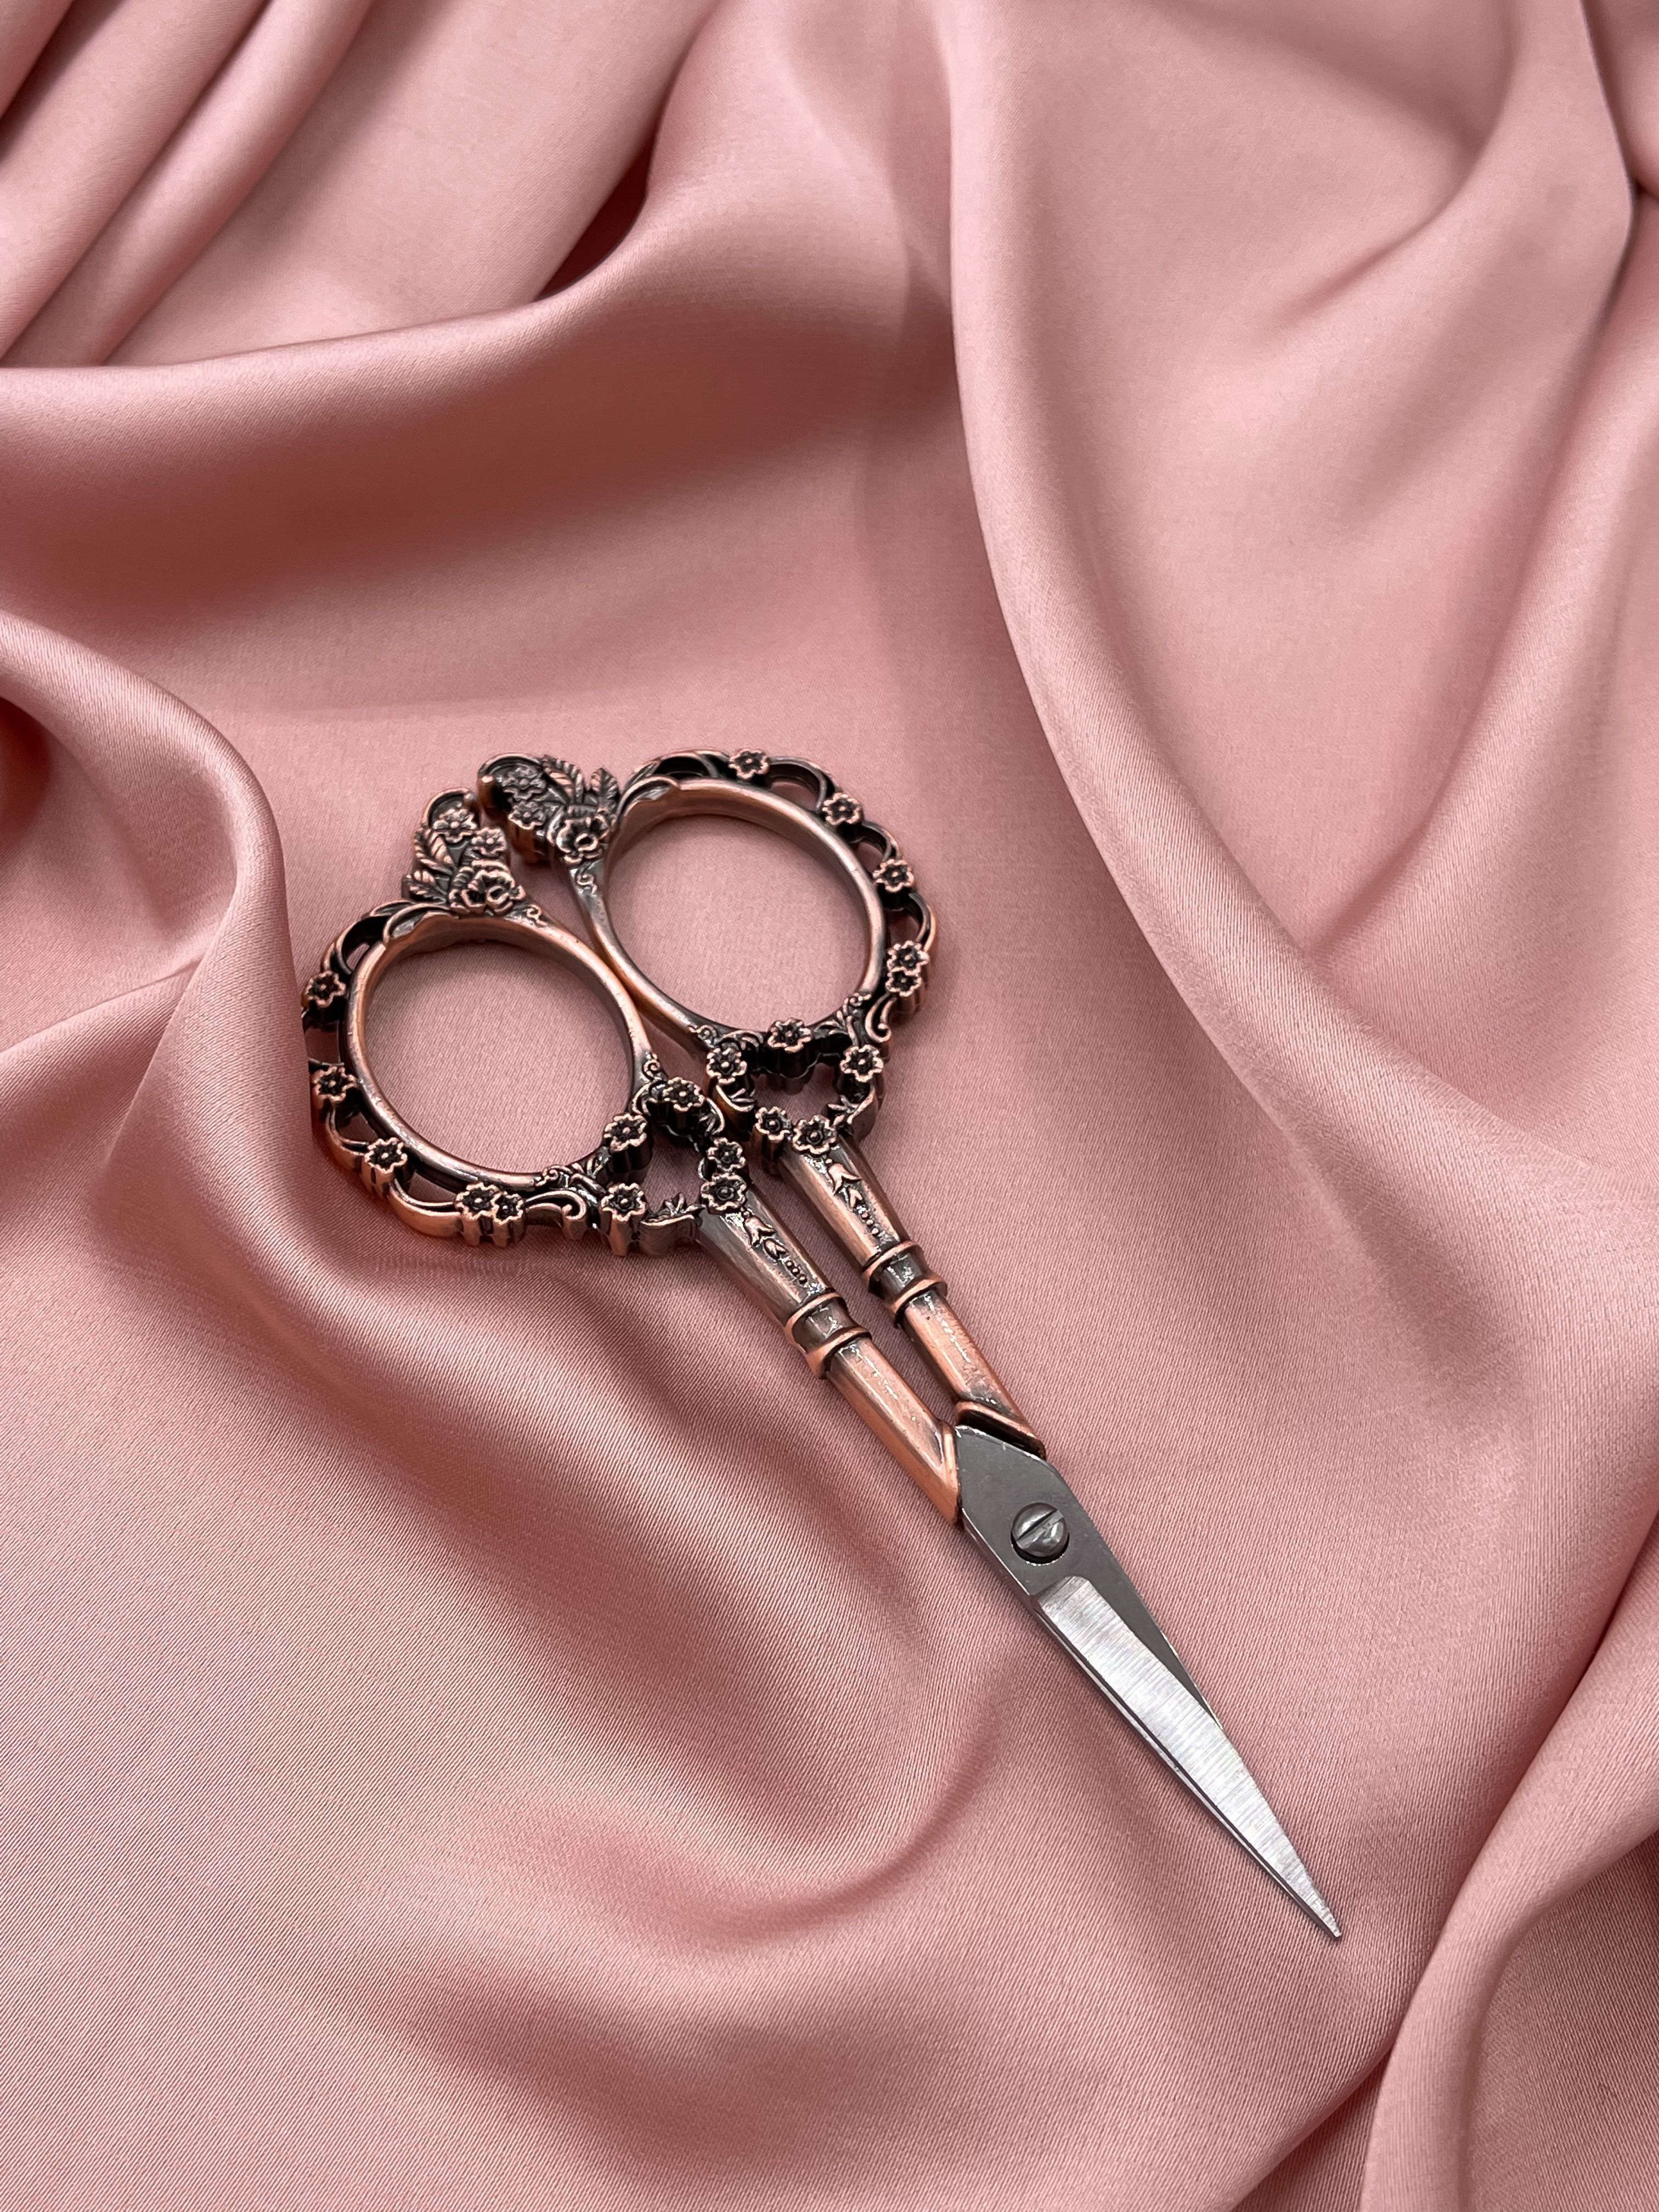 Ножницы для рукоделия Bouton Ажурные розовый, бронзовый цвет